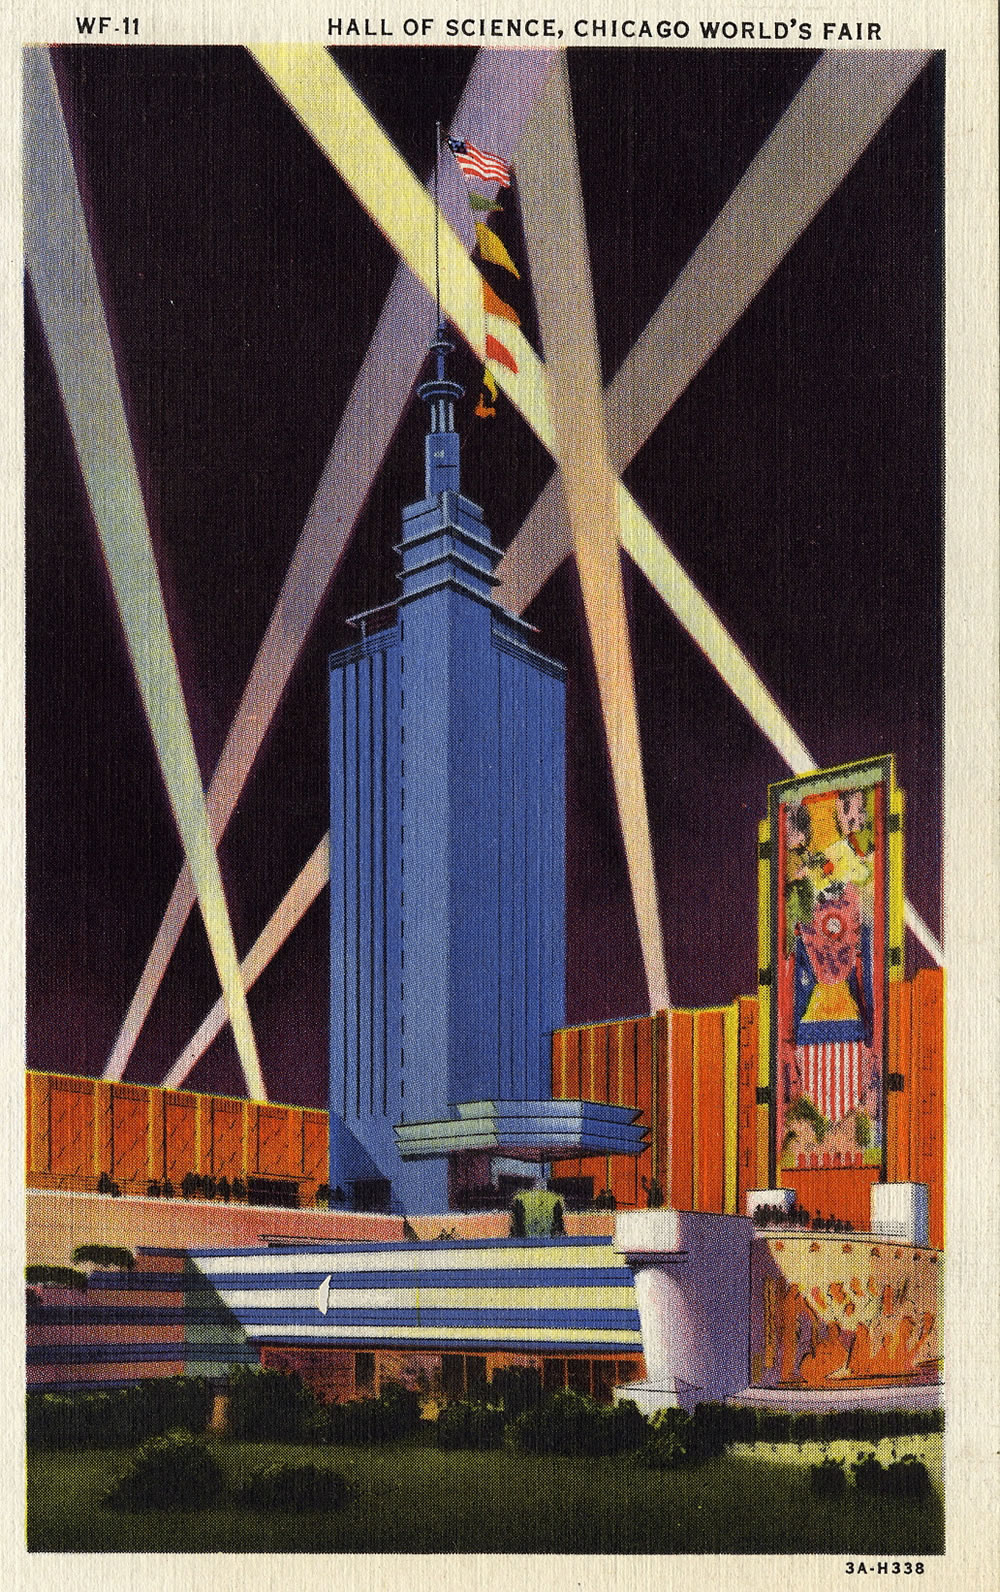 Antique Postcard Collection - Art Deco | World's fair, Poster prints ...